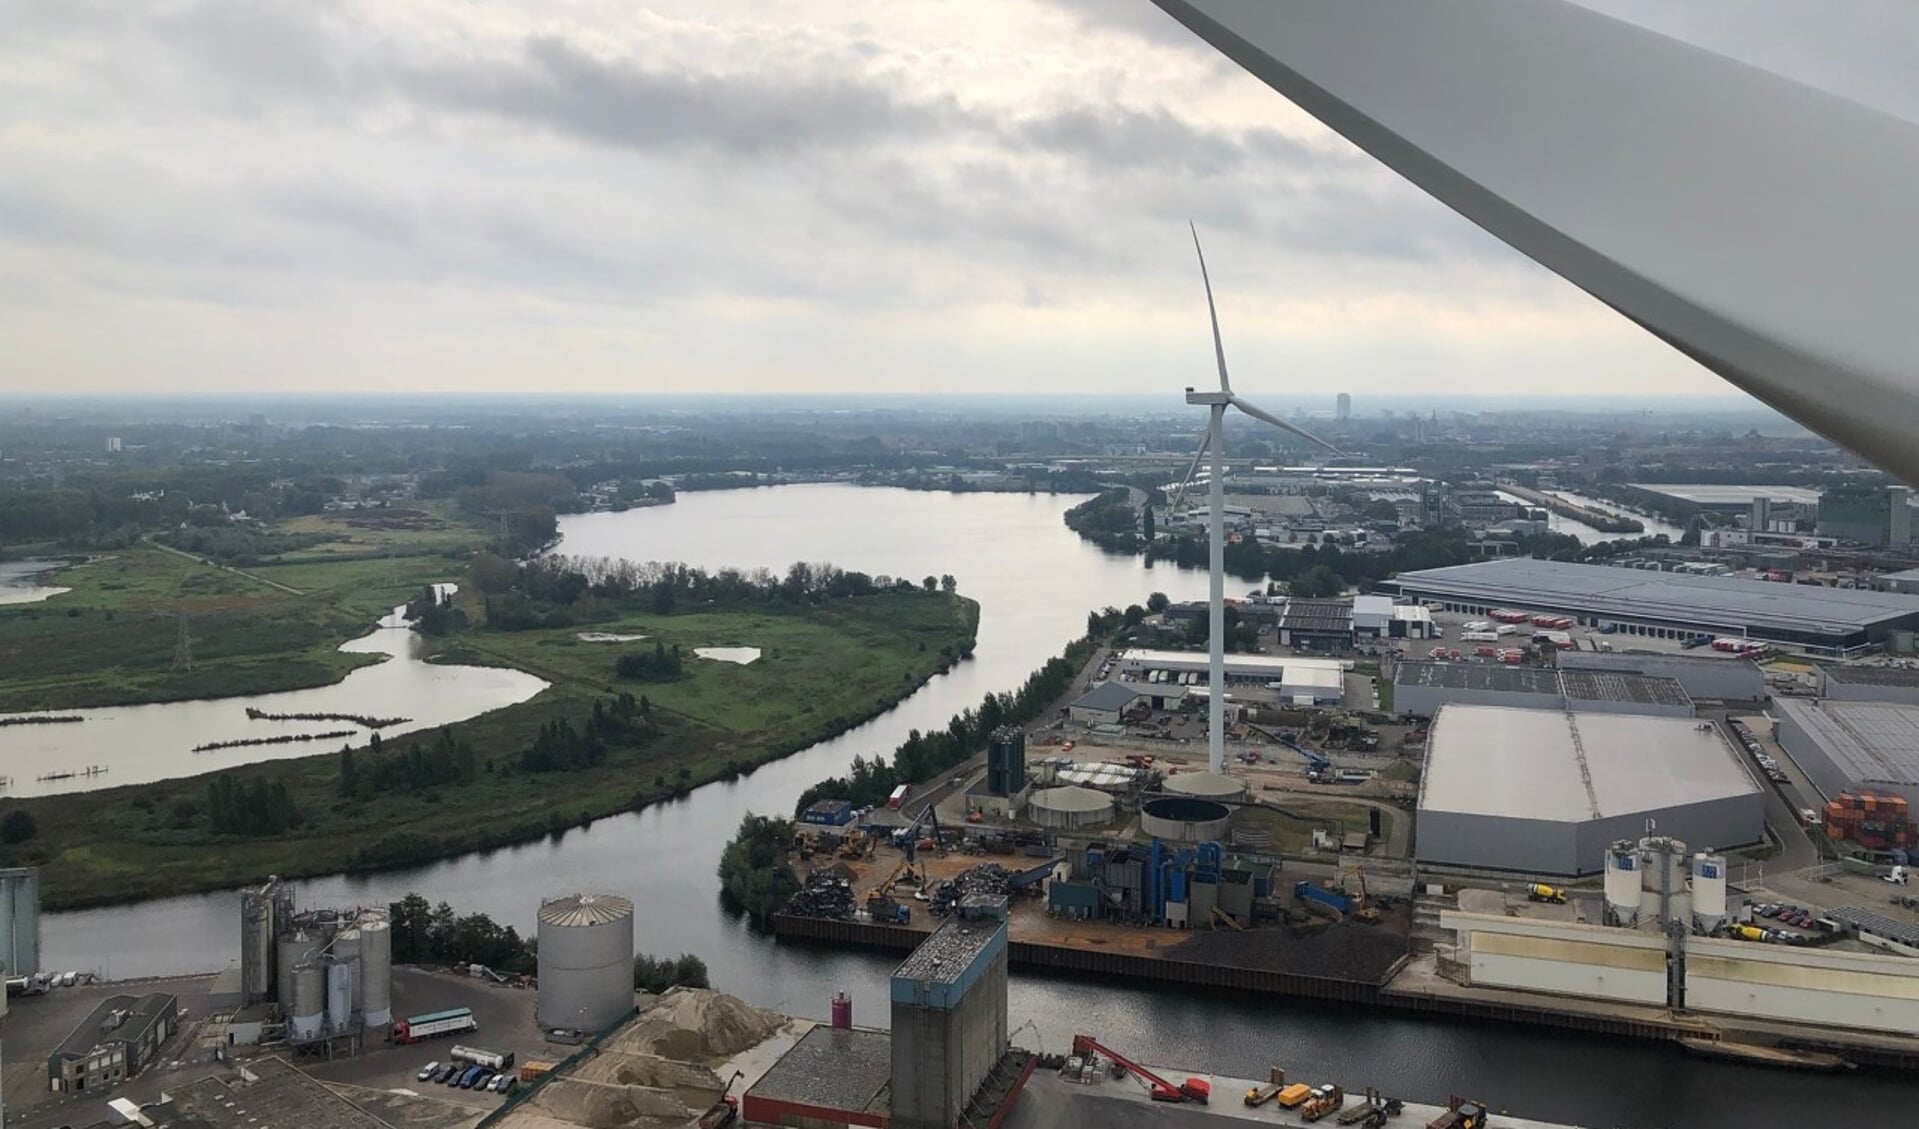 Windpark De Rietvelden in Den Bosch gezien vanaf de windmolen aan de Graaf van Solmsweg, kijkend op de windmolen op het terrein van de Heineken brouwerij.